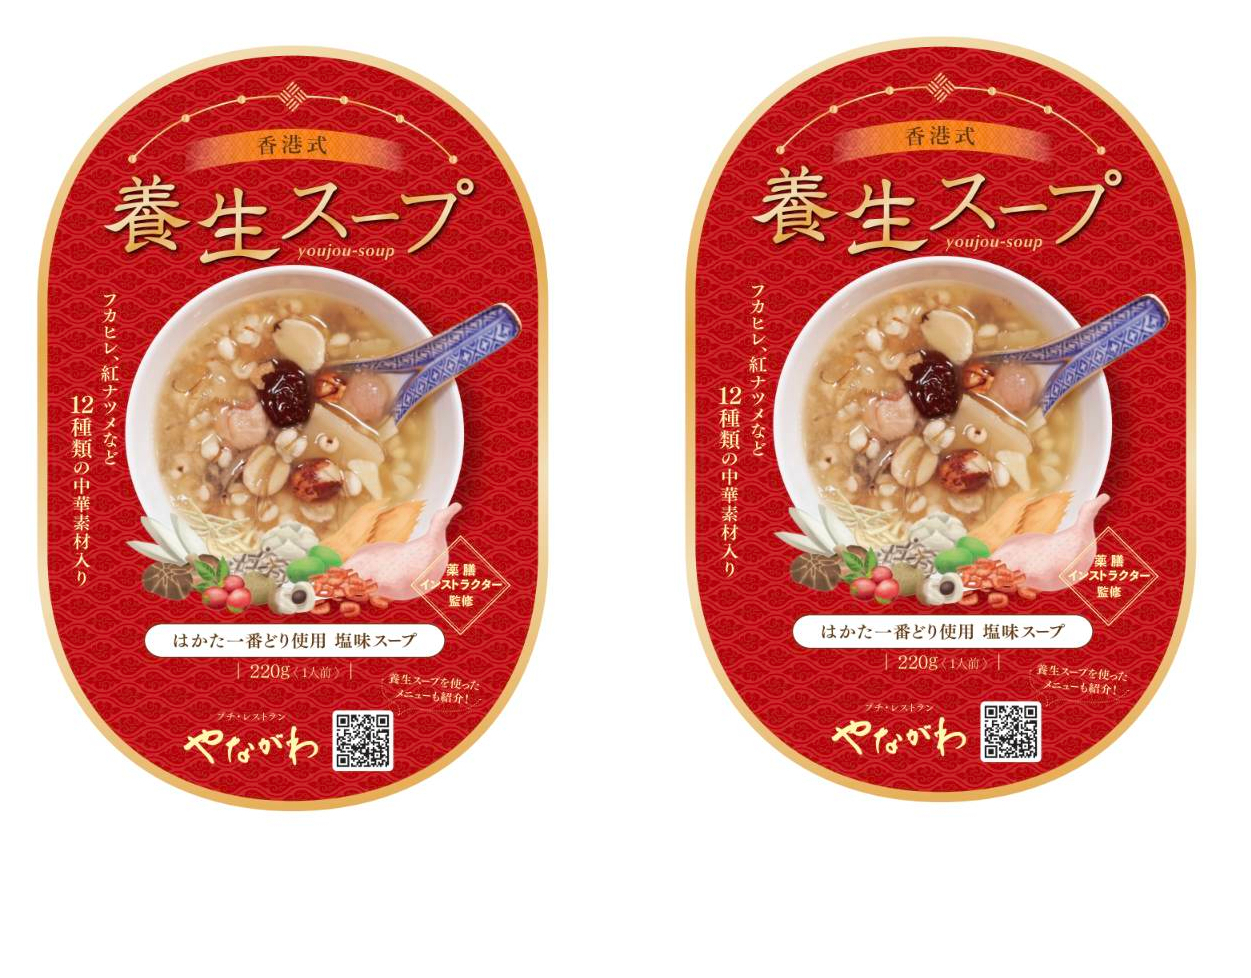 「プチ・レストランやながわ」の薬膳マイスター監修した、12種類の中華食材を使用した香港式栄養たっぷりな塩味の飲みやすいスープです。 【ふるさと納税】フカヒレ入り養生スープ2パック